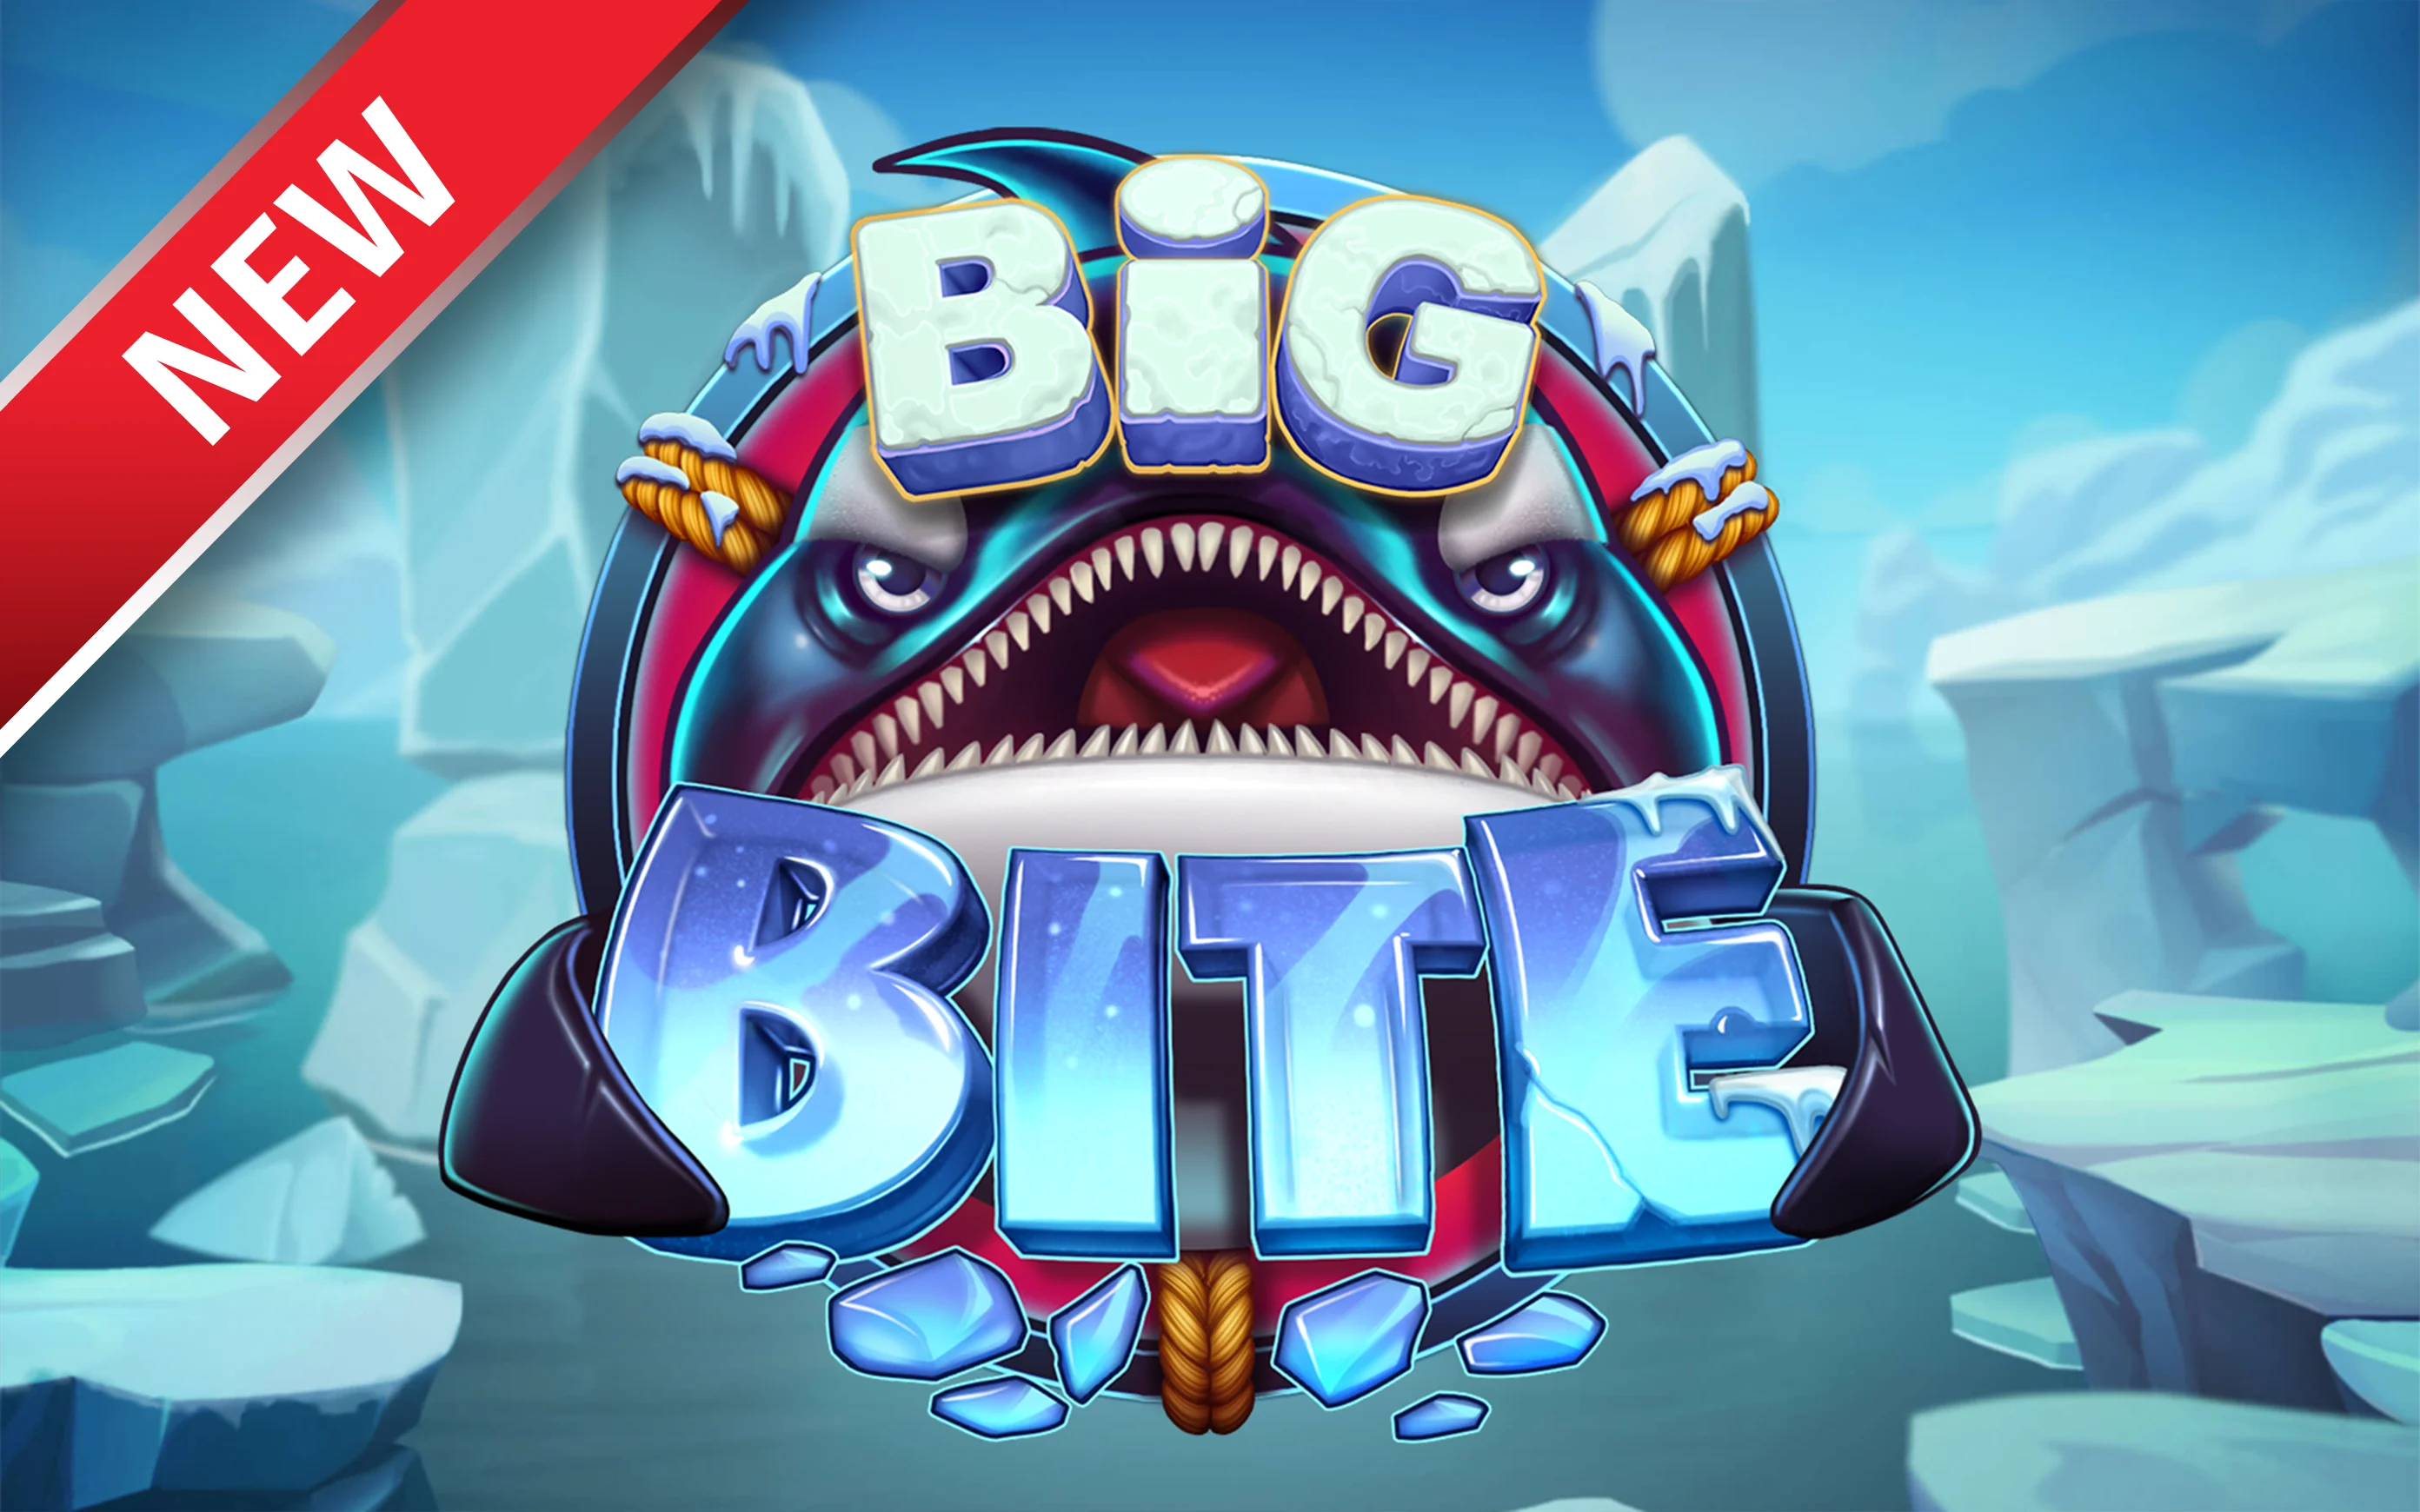 Zagraj w Big Bite w kasynie online Starcasino.be